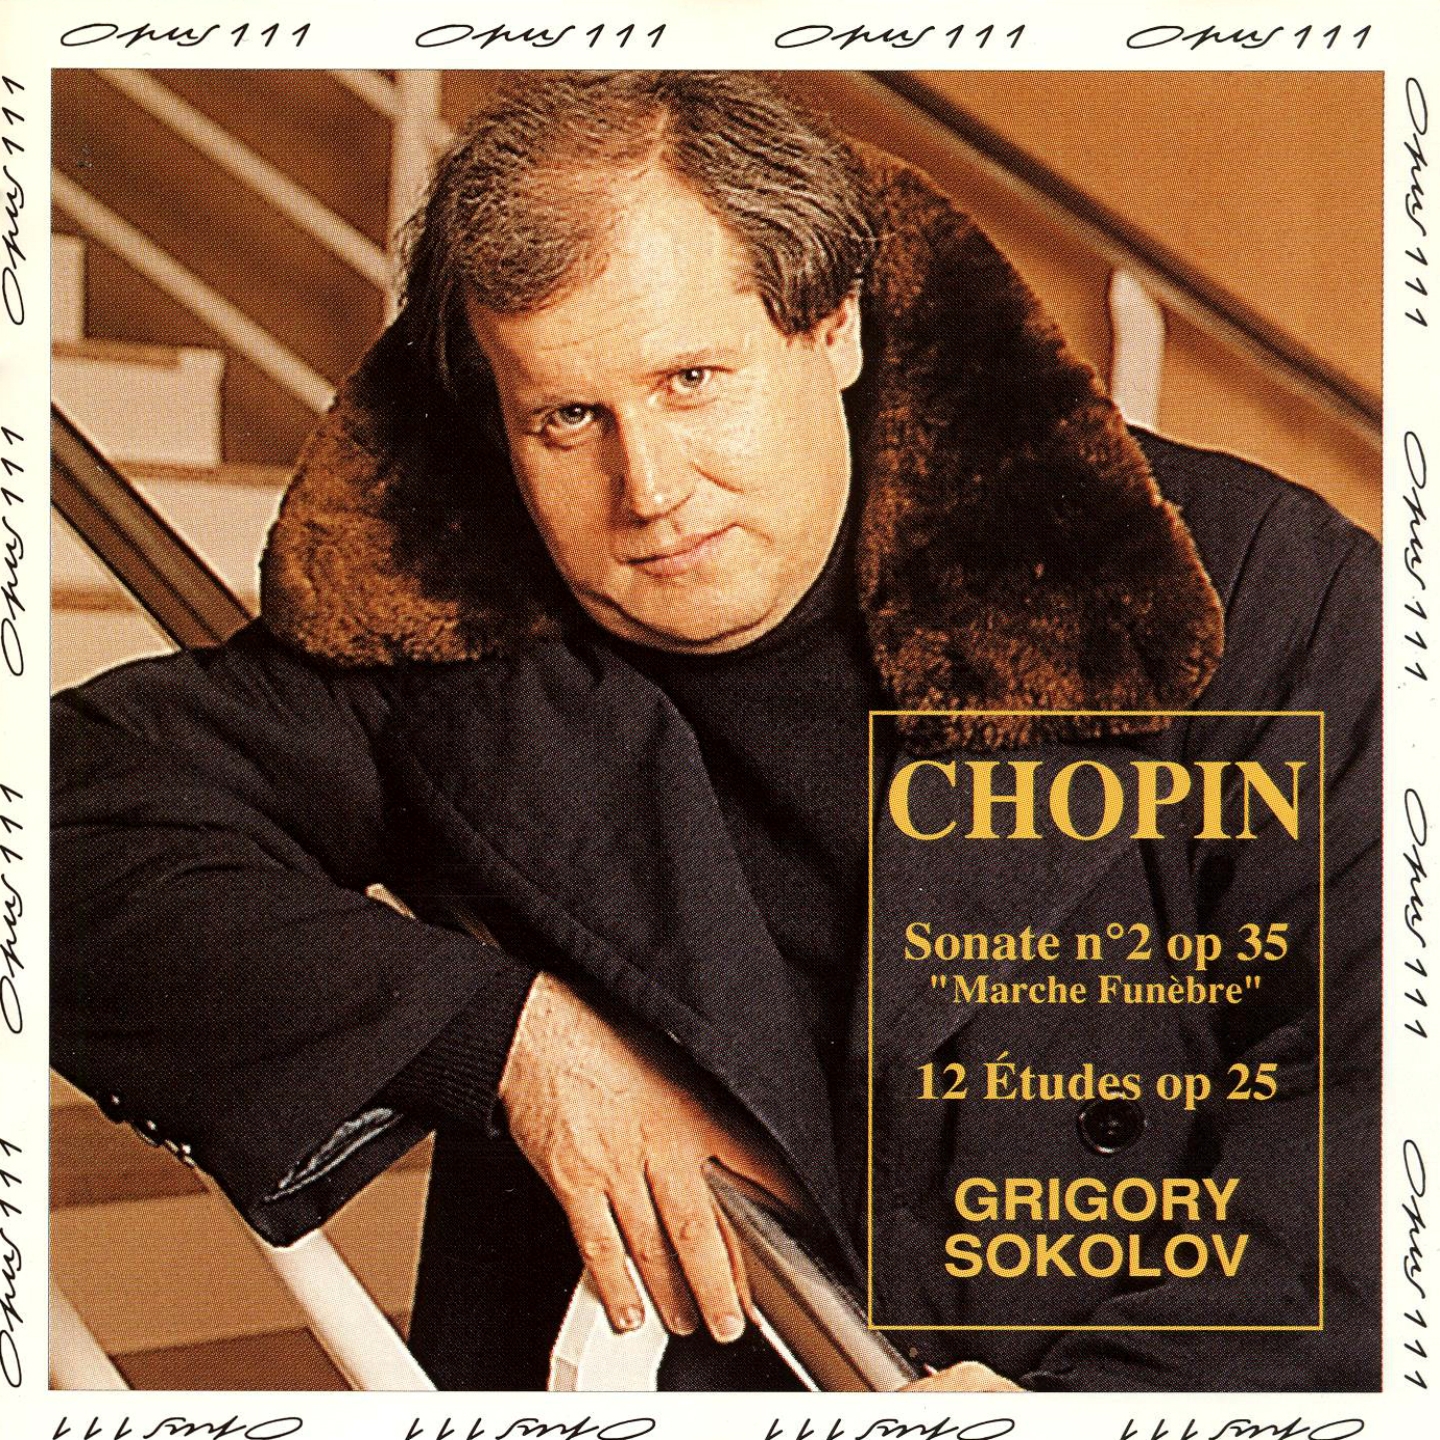 Chopin: Sonate No. 2, Op 35  12 e tudes, Op. 25